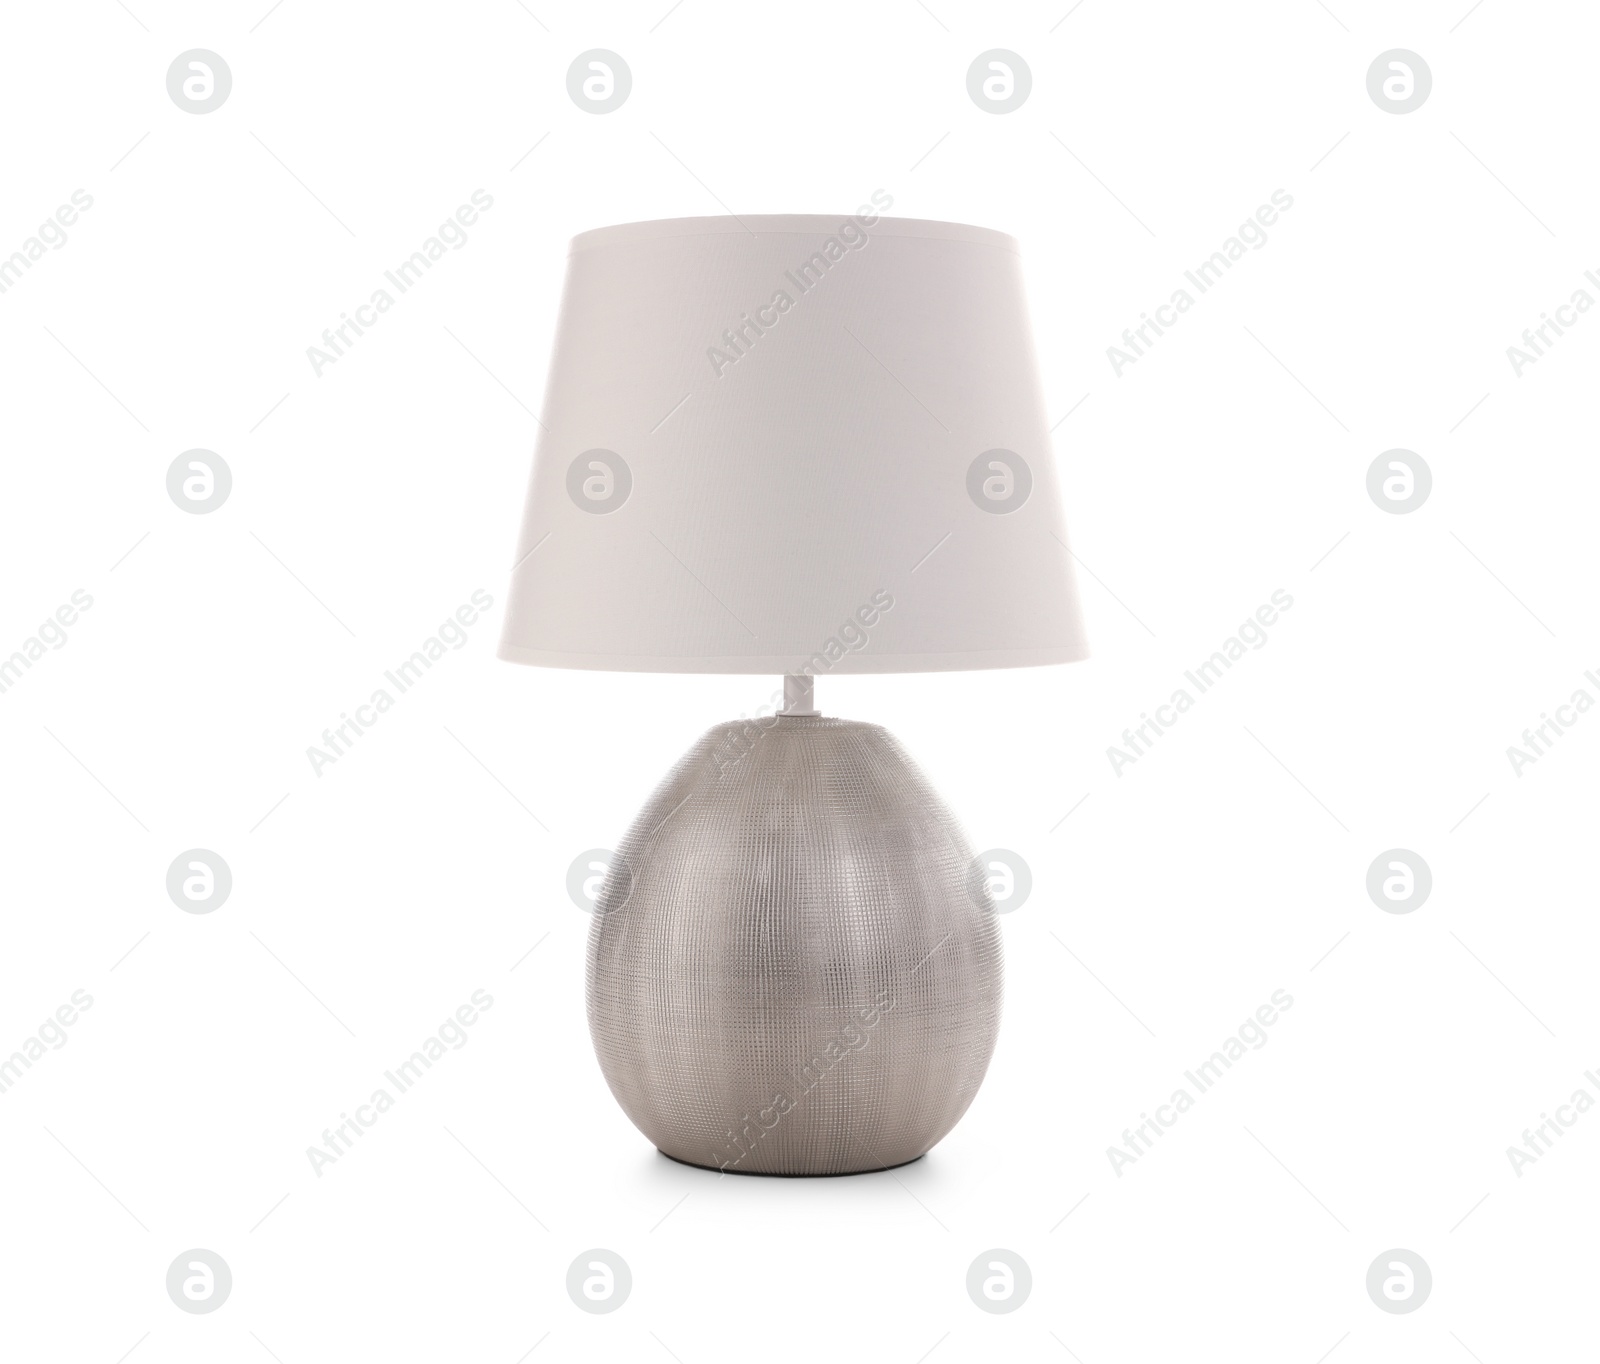 Photo of Stylish new night lamp isolated on white